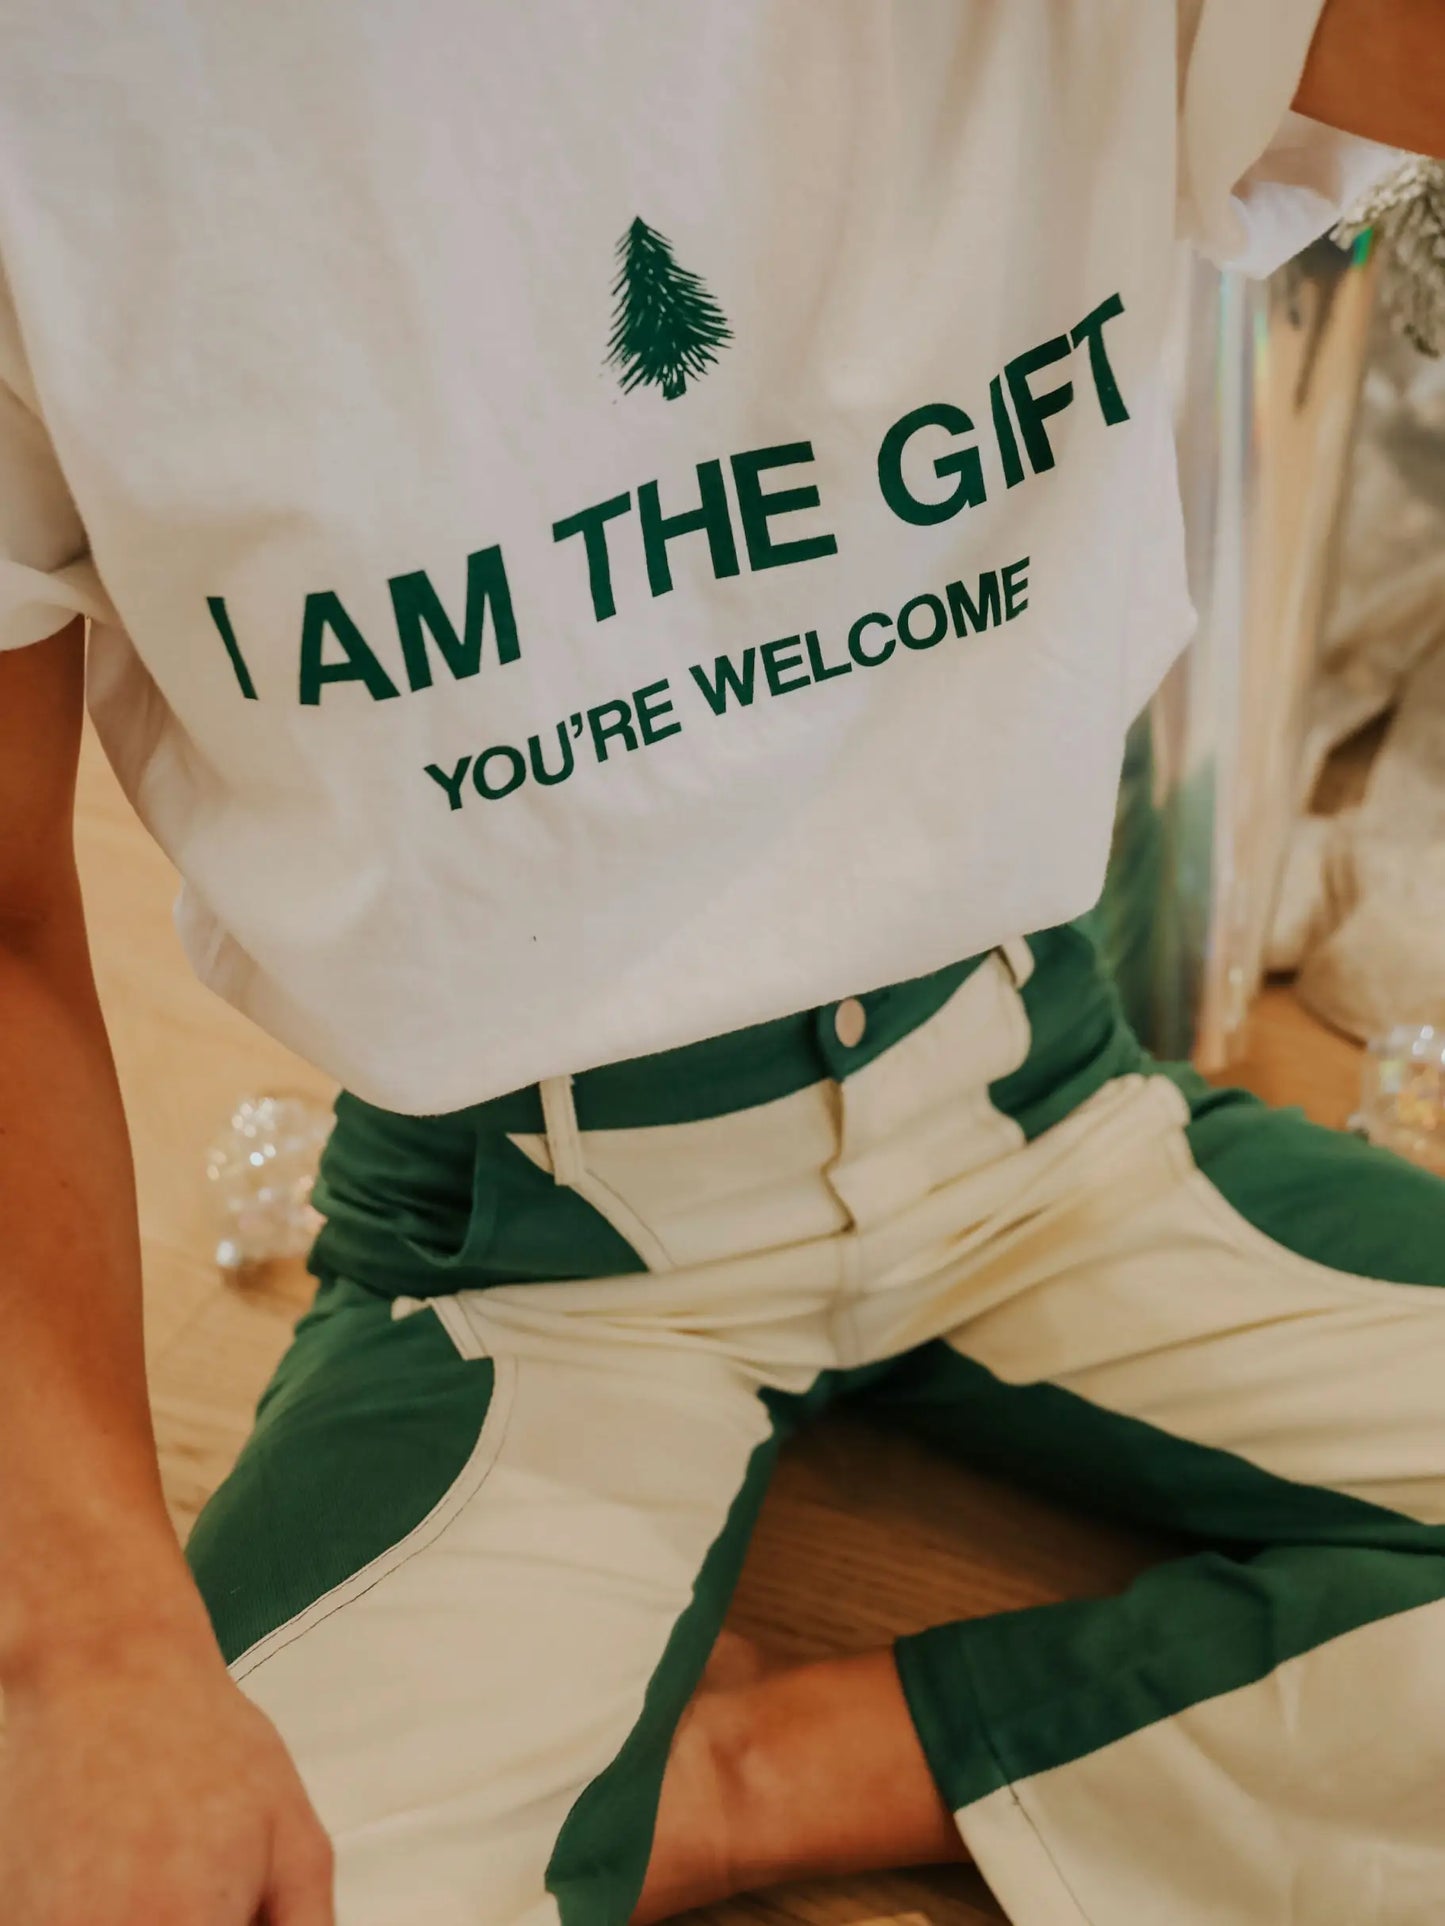 I am the gift tshirt